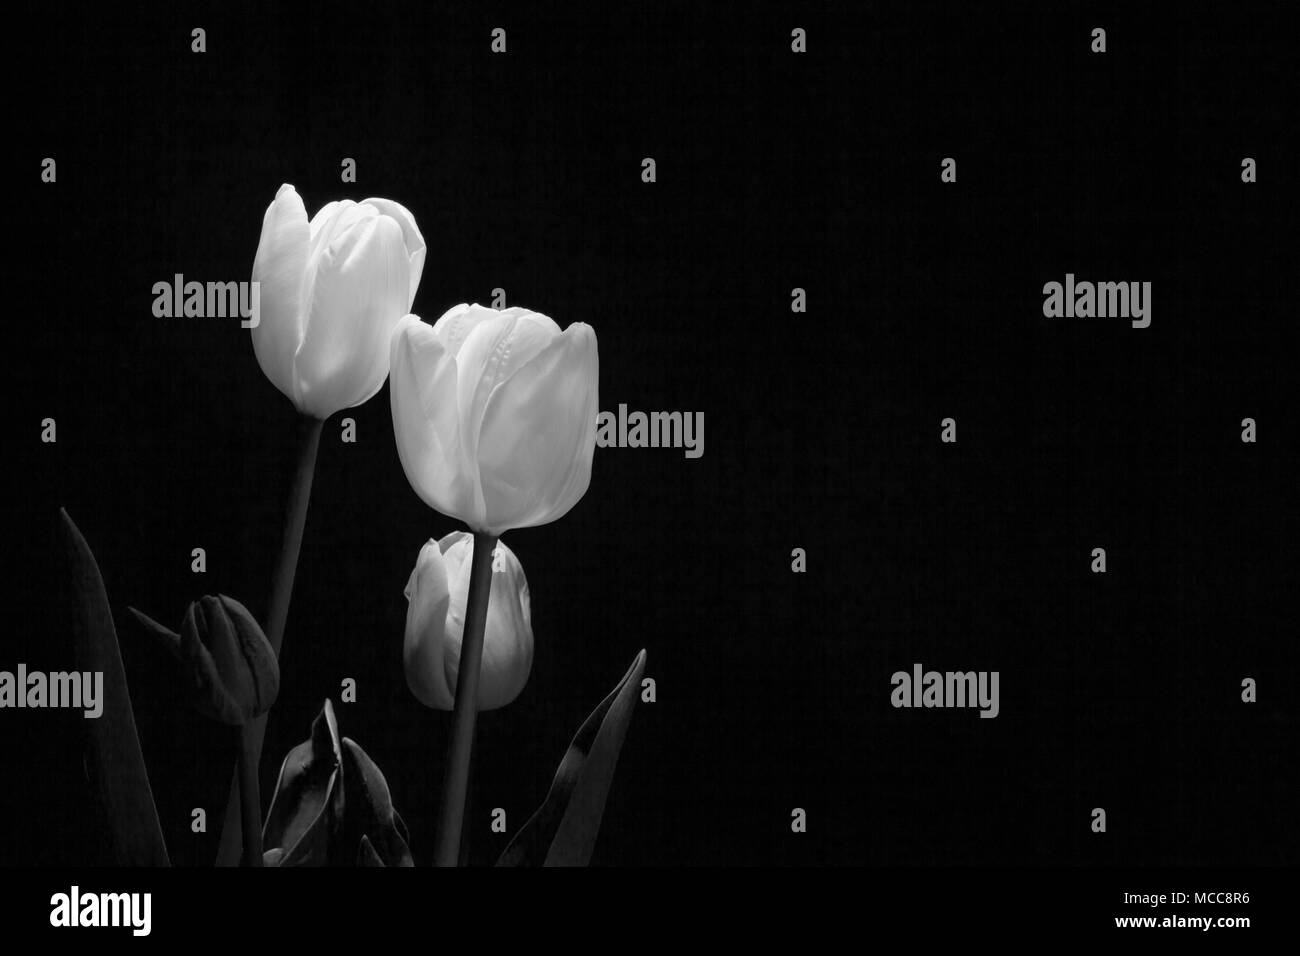 Groupe de tulipes blanches sous une faible lumière sur fond noir Banque D'Images